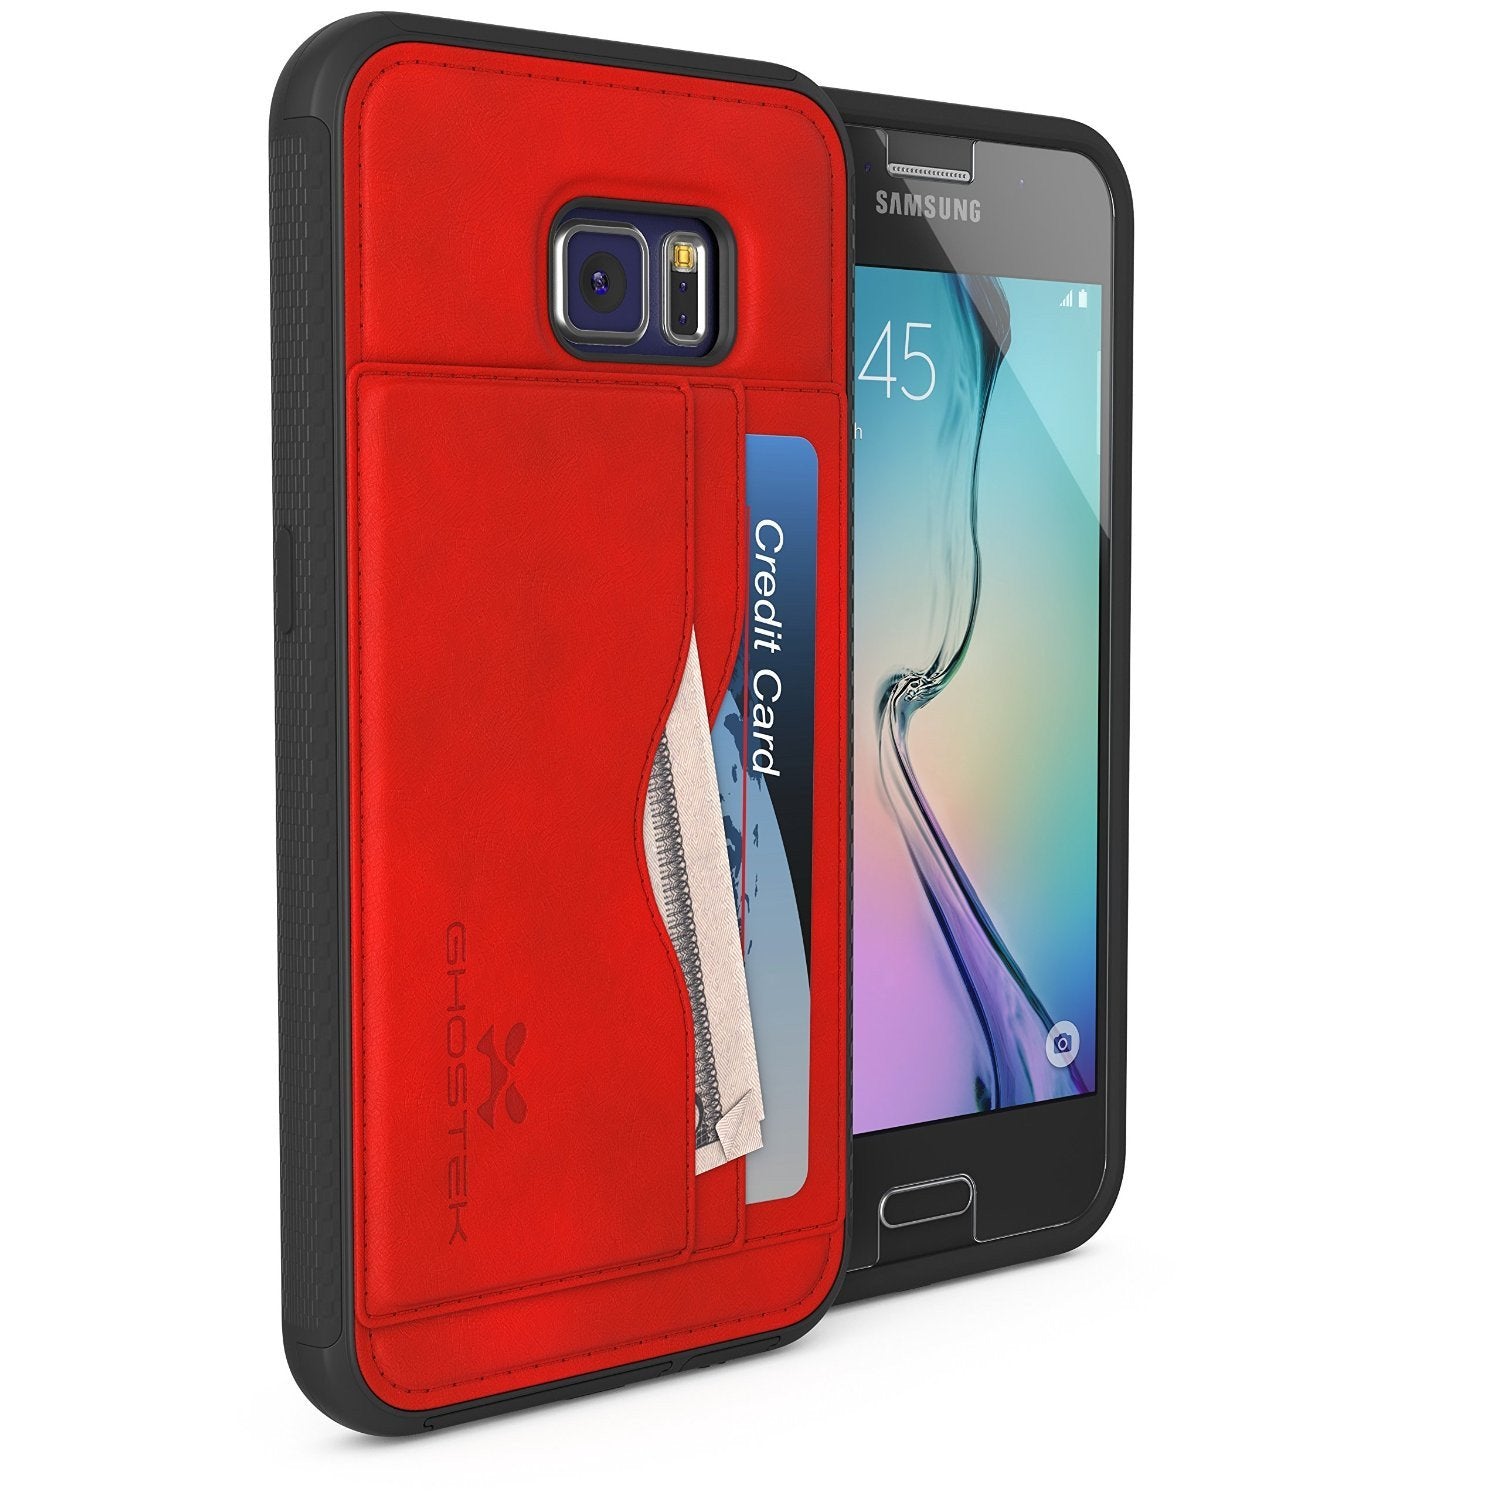 Galaxy S6 Wallet Case, Ghostek Stash Red Wallet Case w/ Tempered Glass | Lifetime Warranty